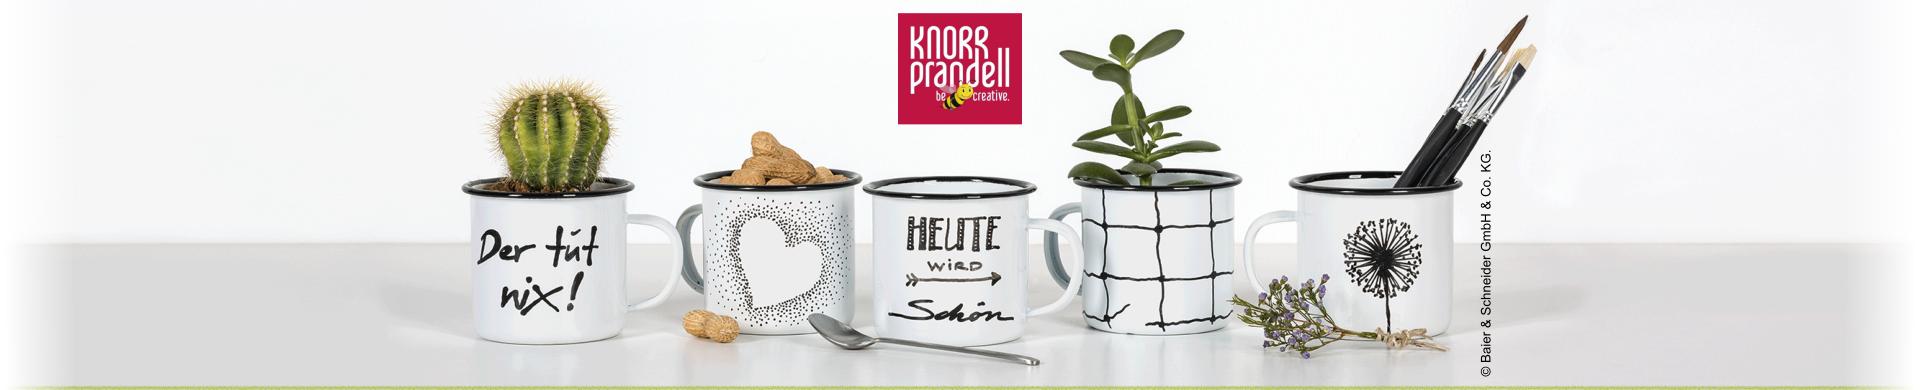 Knorr Prandell Glass & Porcelain Marker Pens